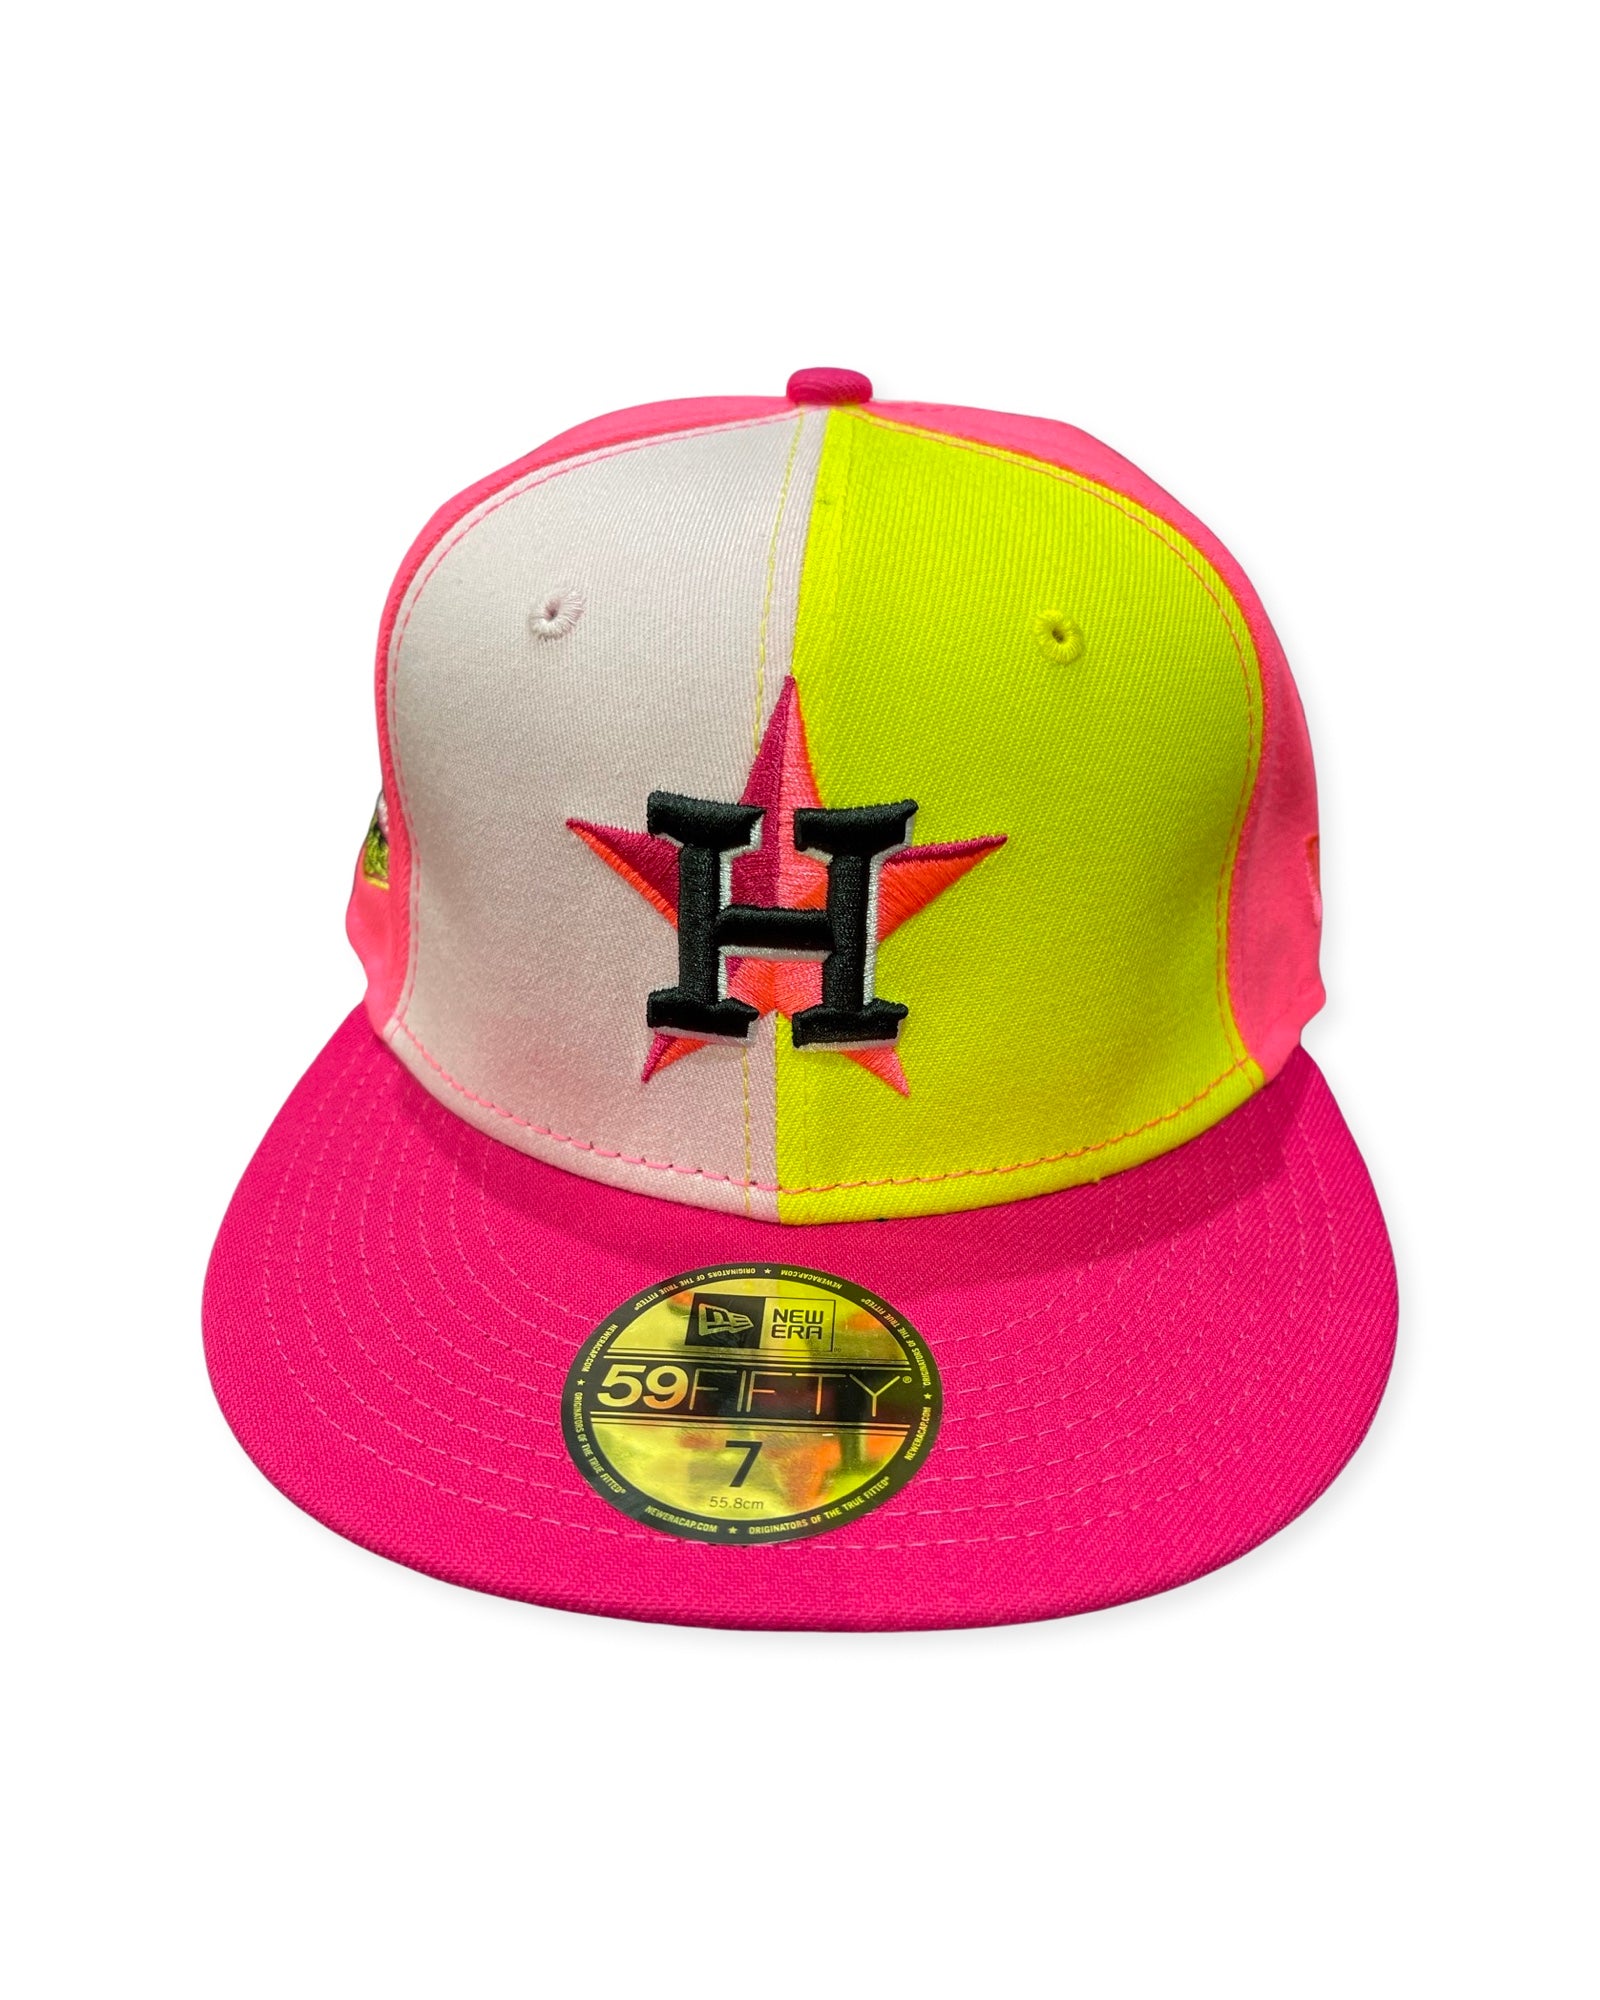 Houston Astros New Era Tonal 59FIFTY Fitted Hat - Khaki